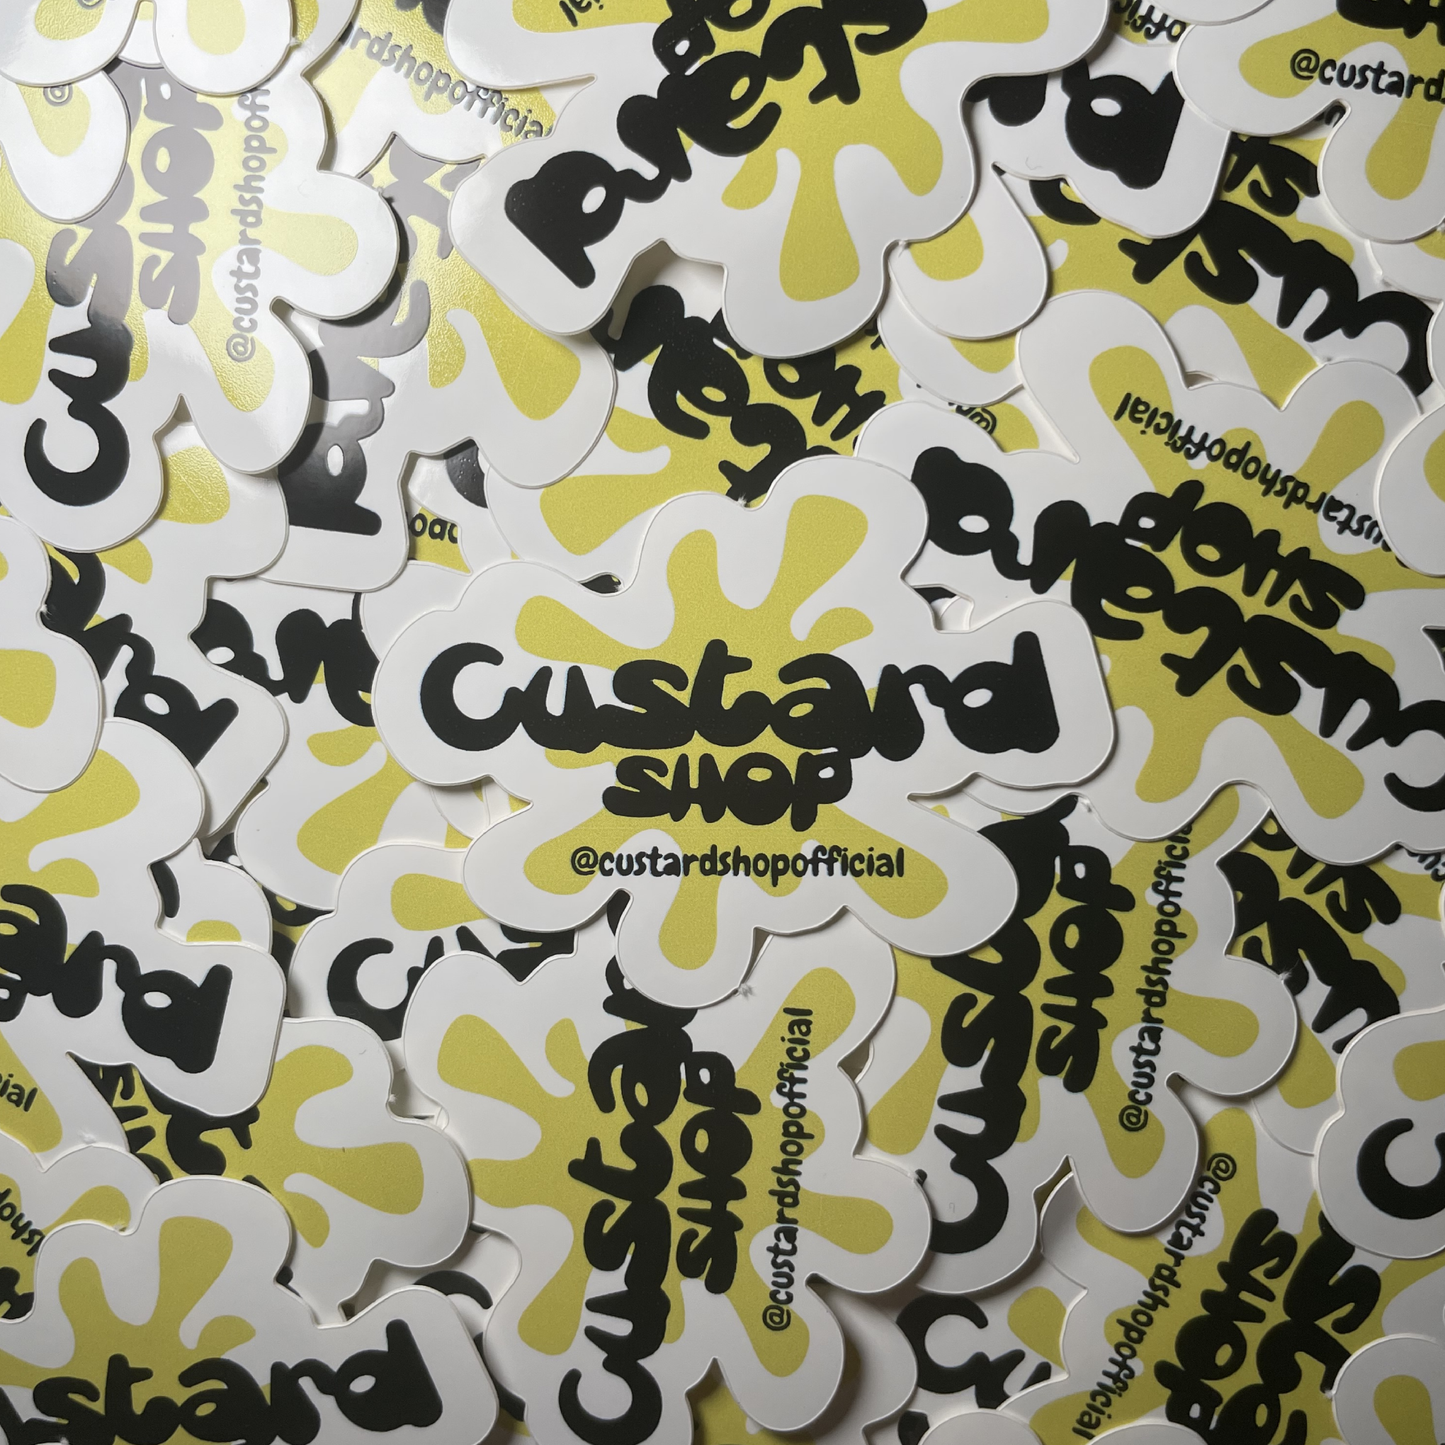 Custard Shop Official Splat Sticker Bundle Custard Shop Official